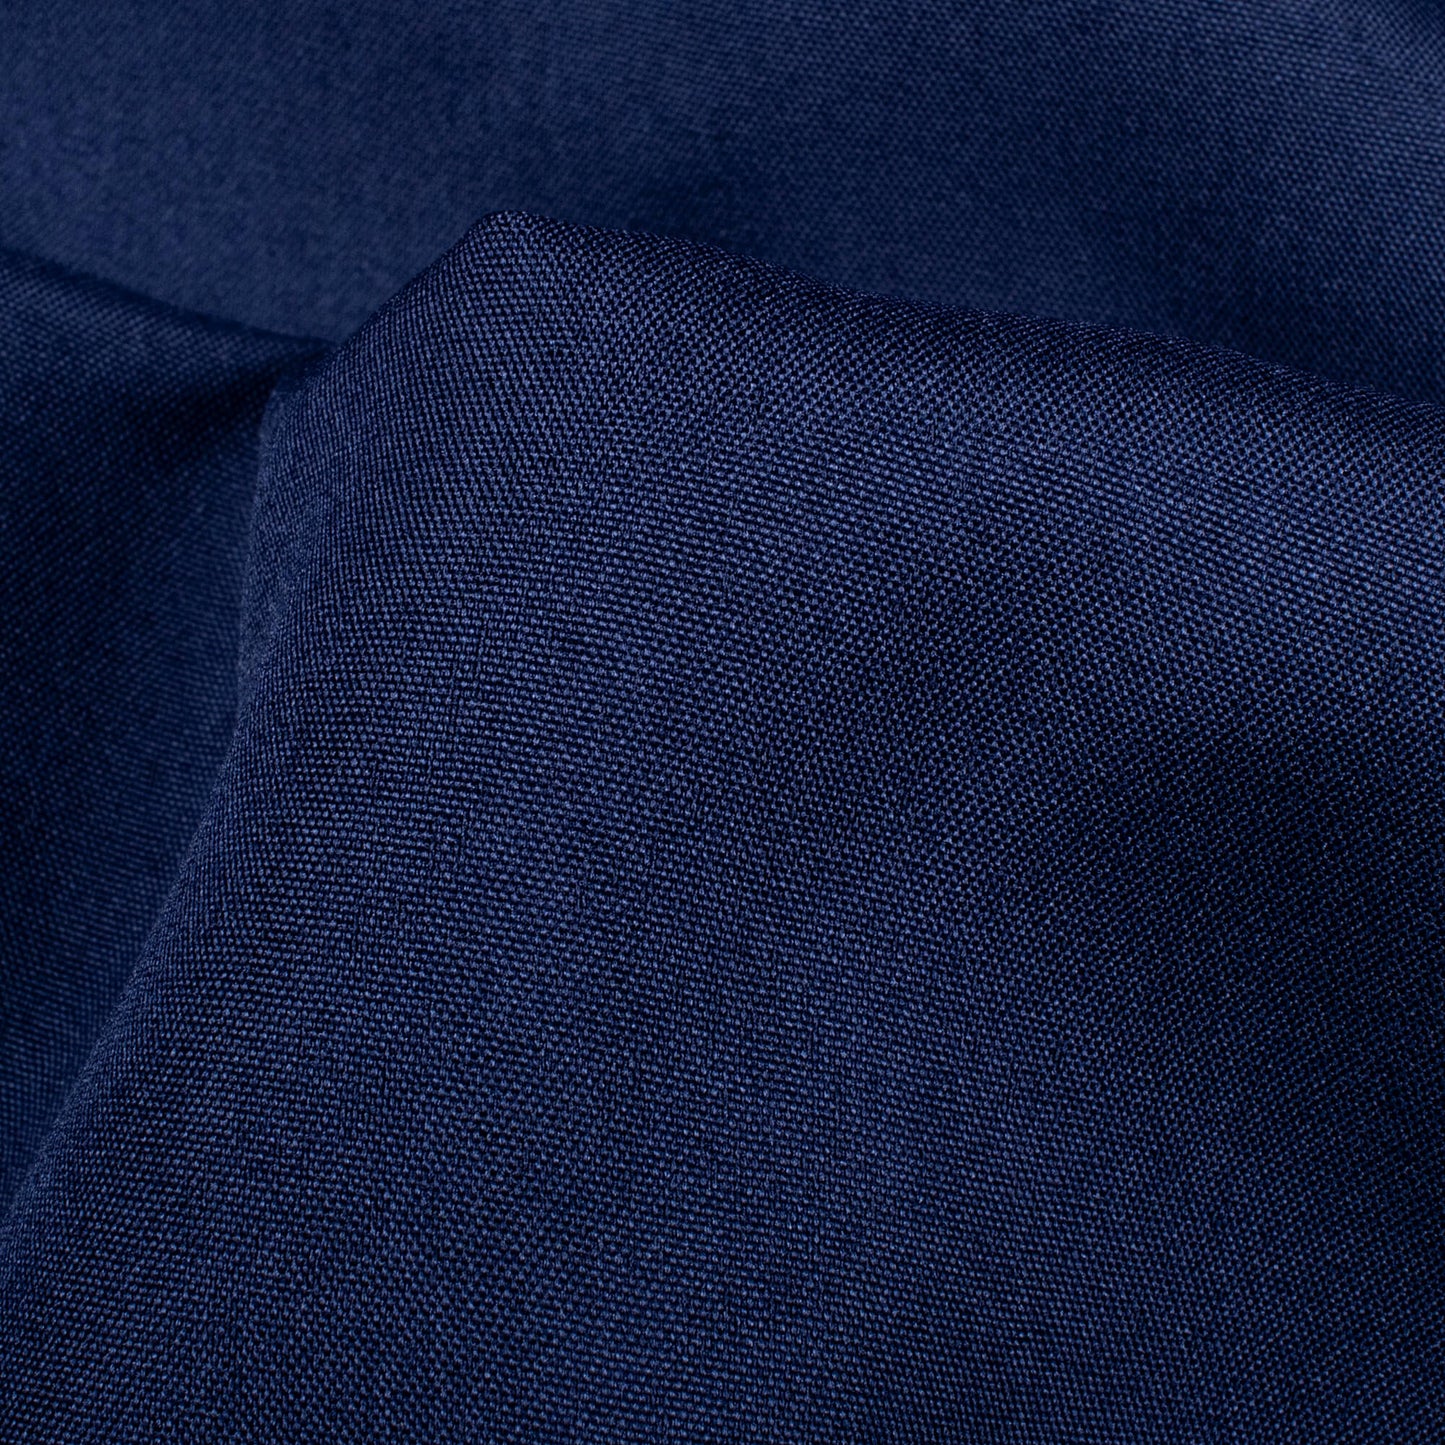 Bali Stretch Crepe Fabric - Navy Blue – Feira dos Tecidos Online